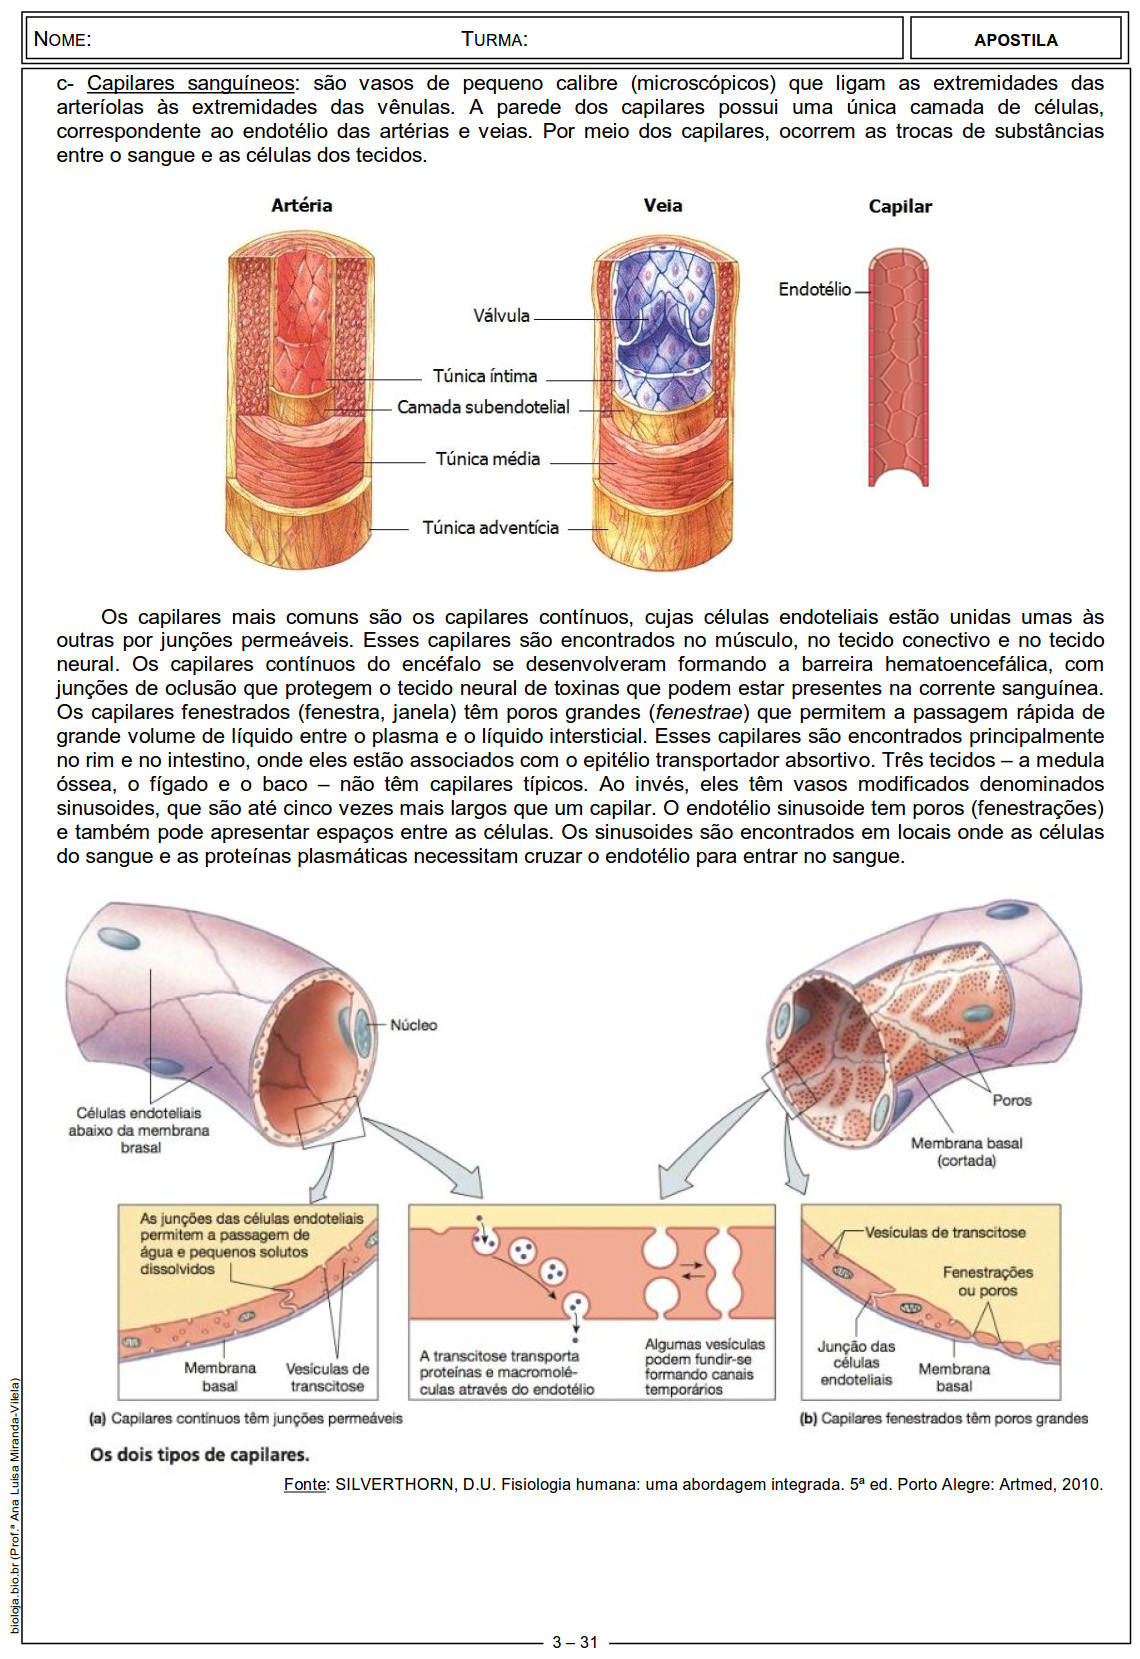 Apostila Fisiologia de órgãos e sistema I: sistema circulatório, sangue e coagulação sanguínea slide 3